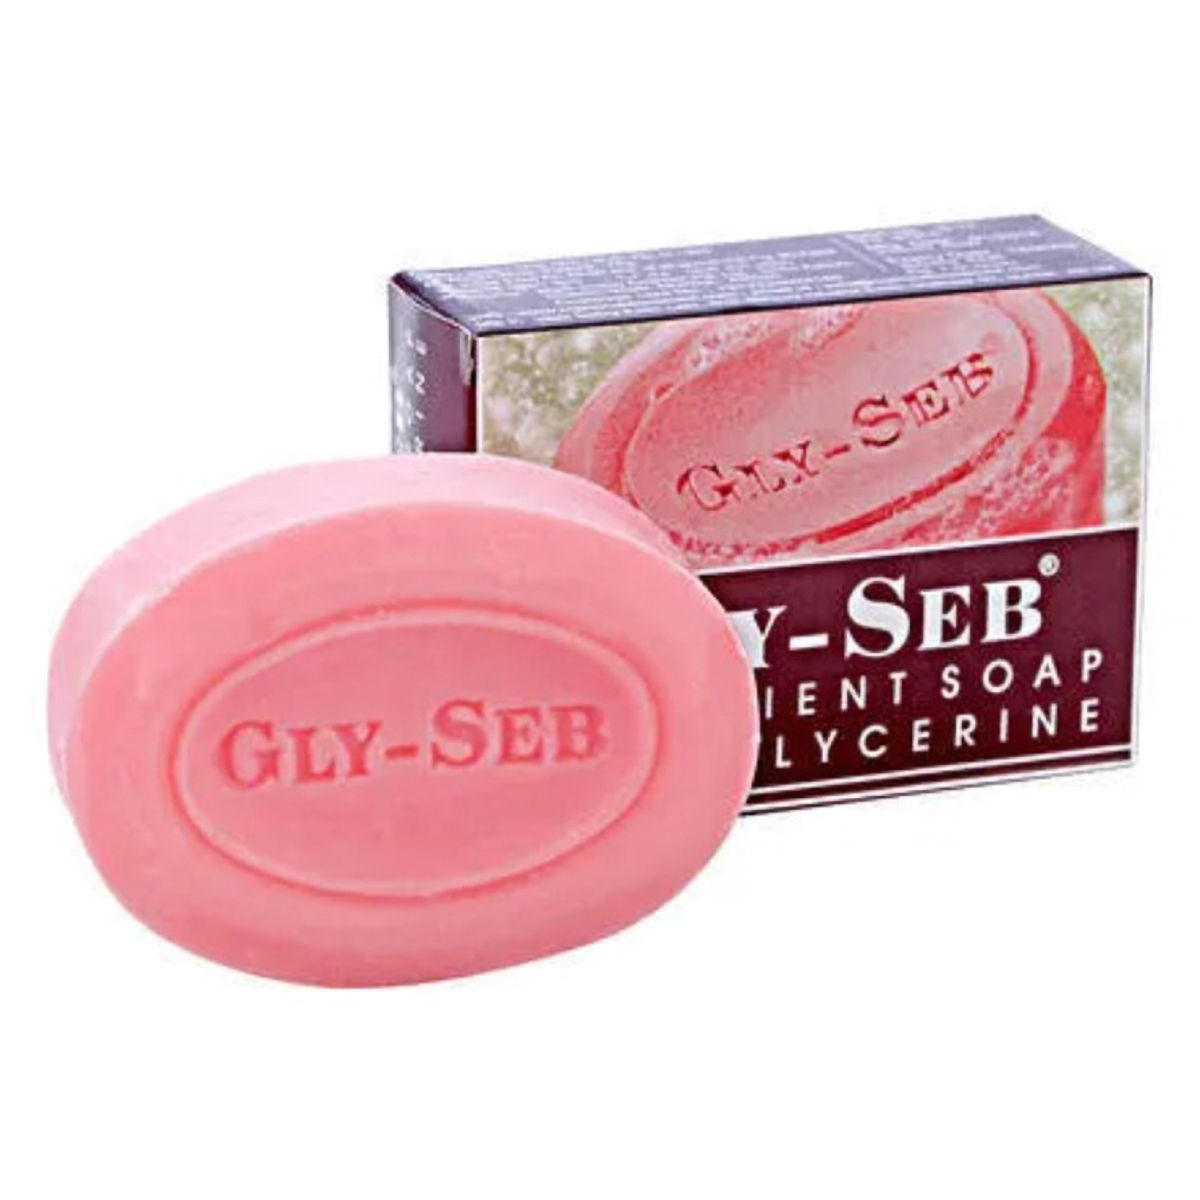 Buy Gly-Seb Soap, 75 gm Online